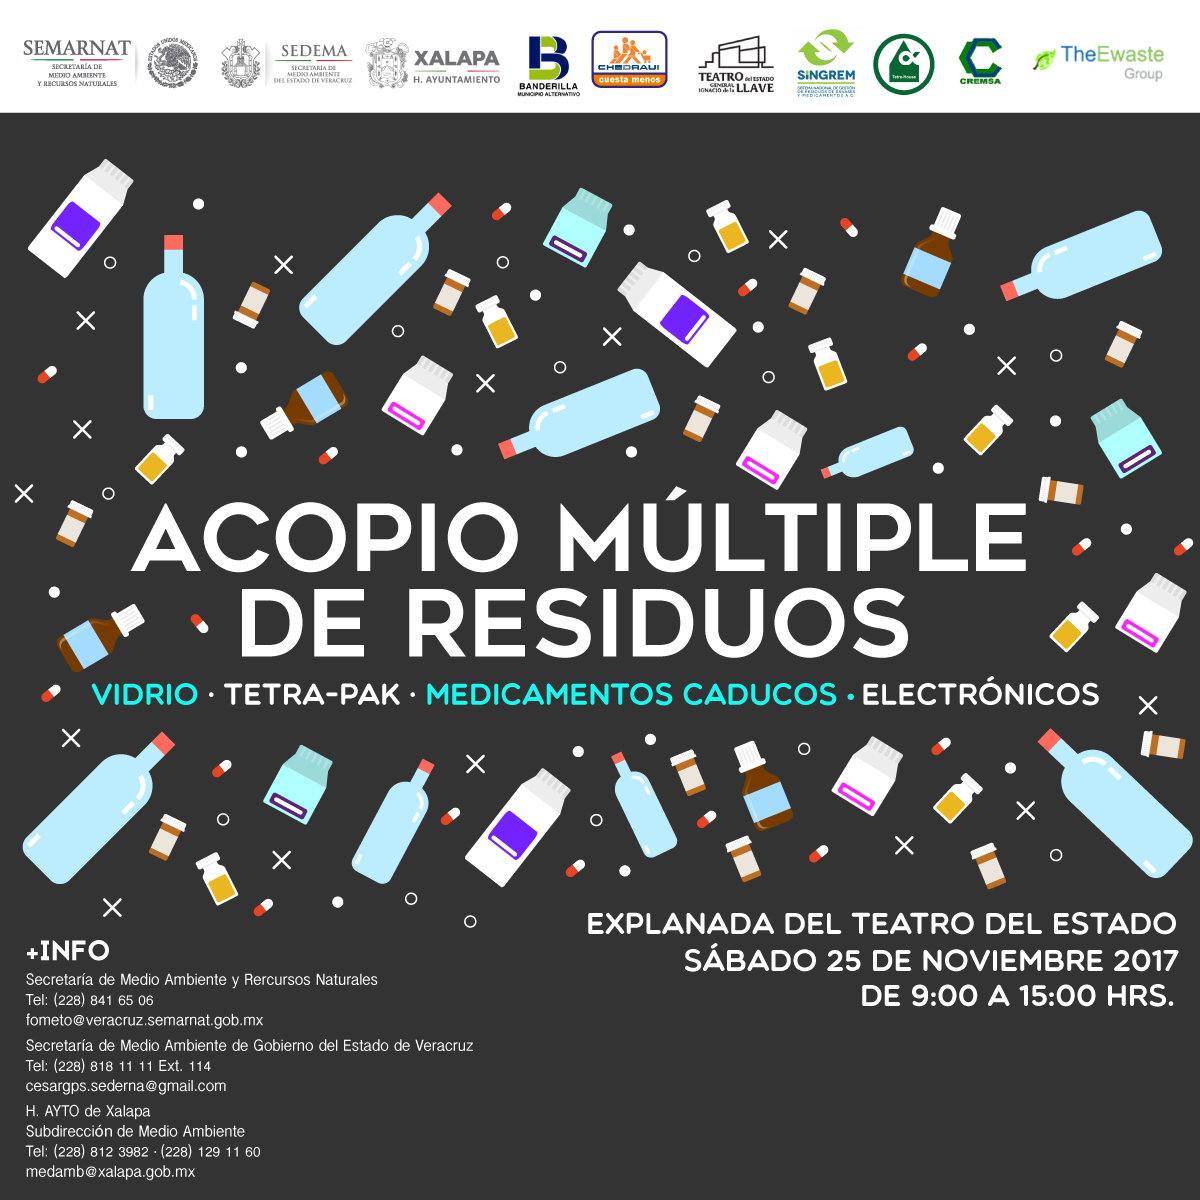 Acopio Múltiple de Residuos: Vidrio, Tetra-Pak, Medicamentos y Electrónicos